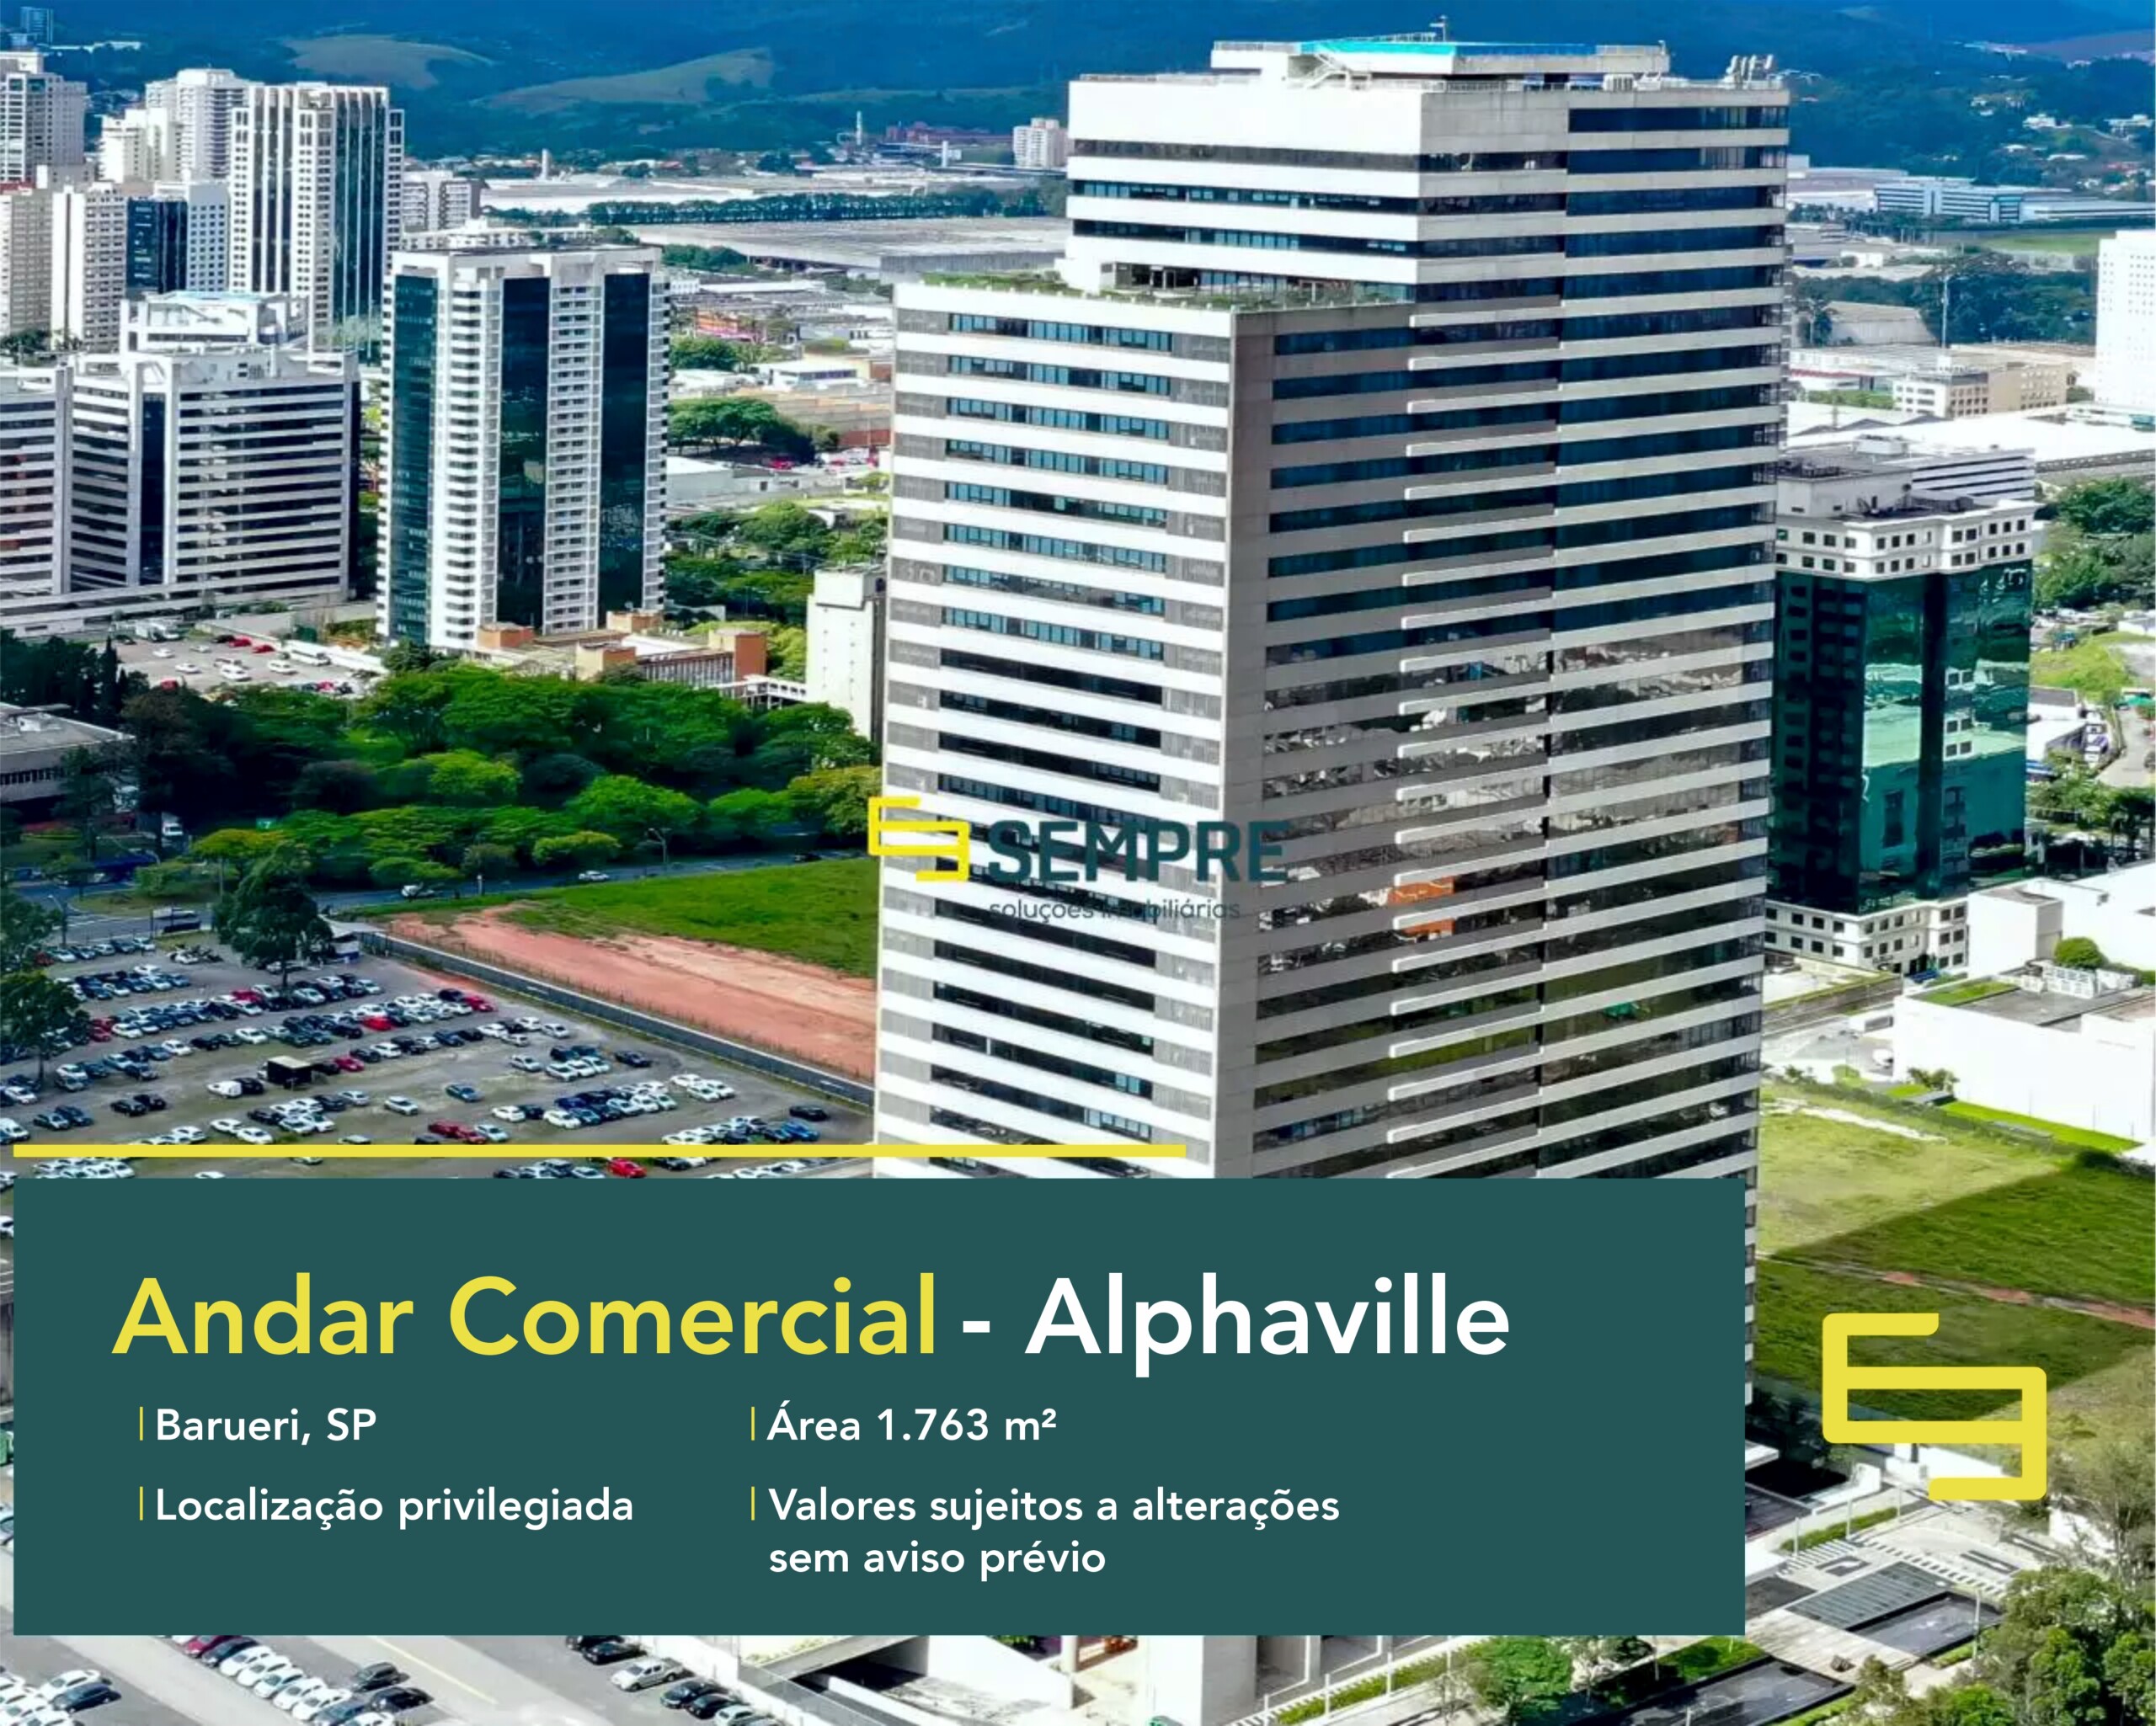 Andar corrido para locação em São Paulo - Evolution Corporate, excelente localização. O estabelecimento comercial conta com área de 1.763 m².